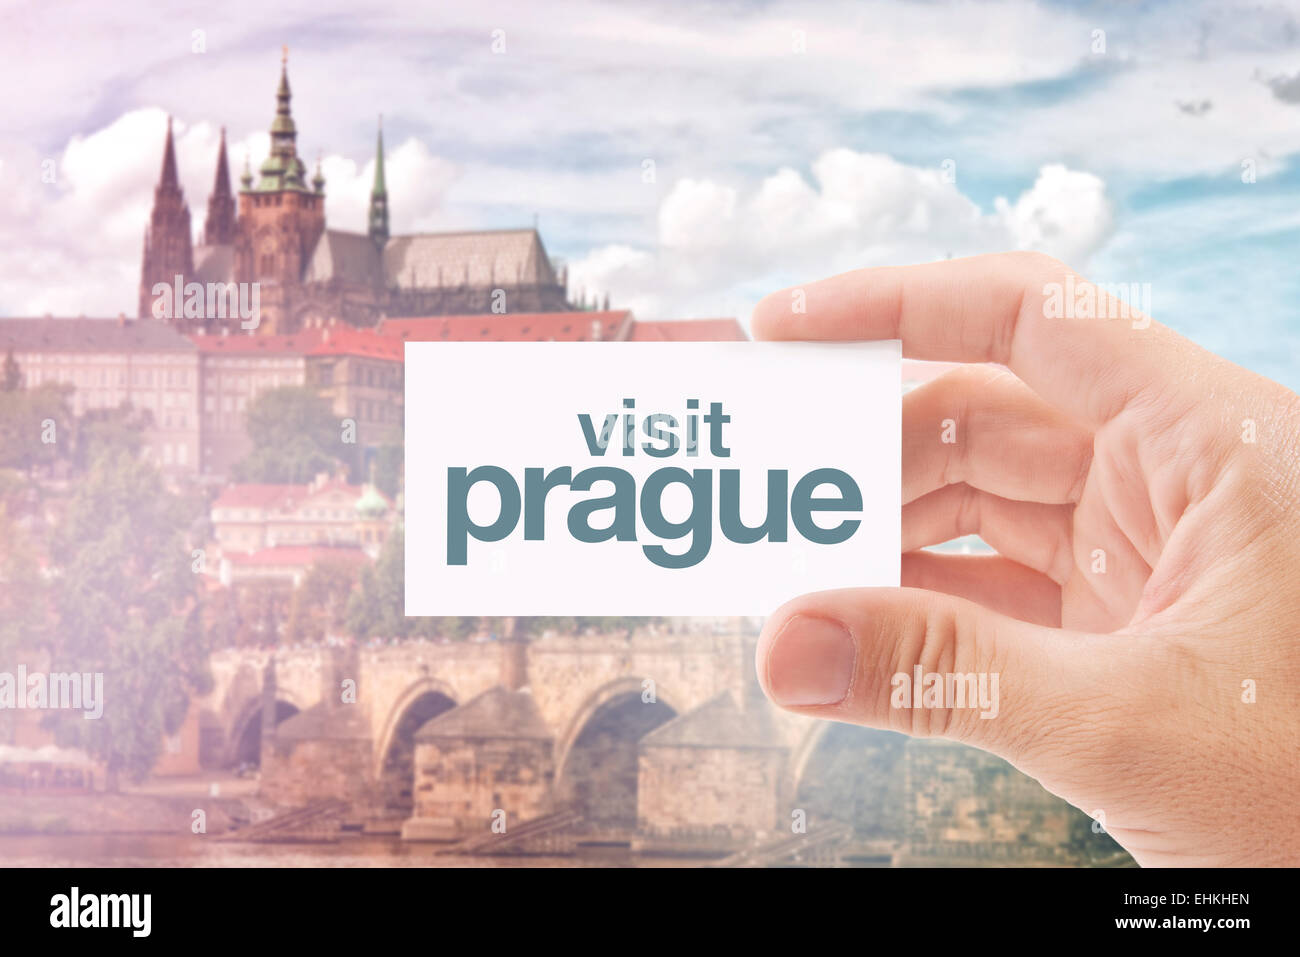 Touristischen Agenten halten Visitenkarte mit Besuch Prag Nachricht, berühmte Sehenswürdigkeiten der tschechischen Hauptstadt - Burg und Karlsbrücke Stockfoto